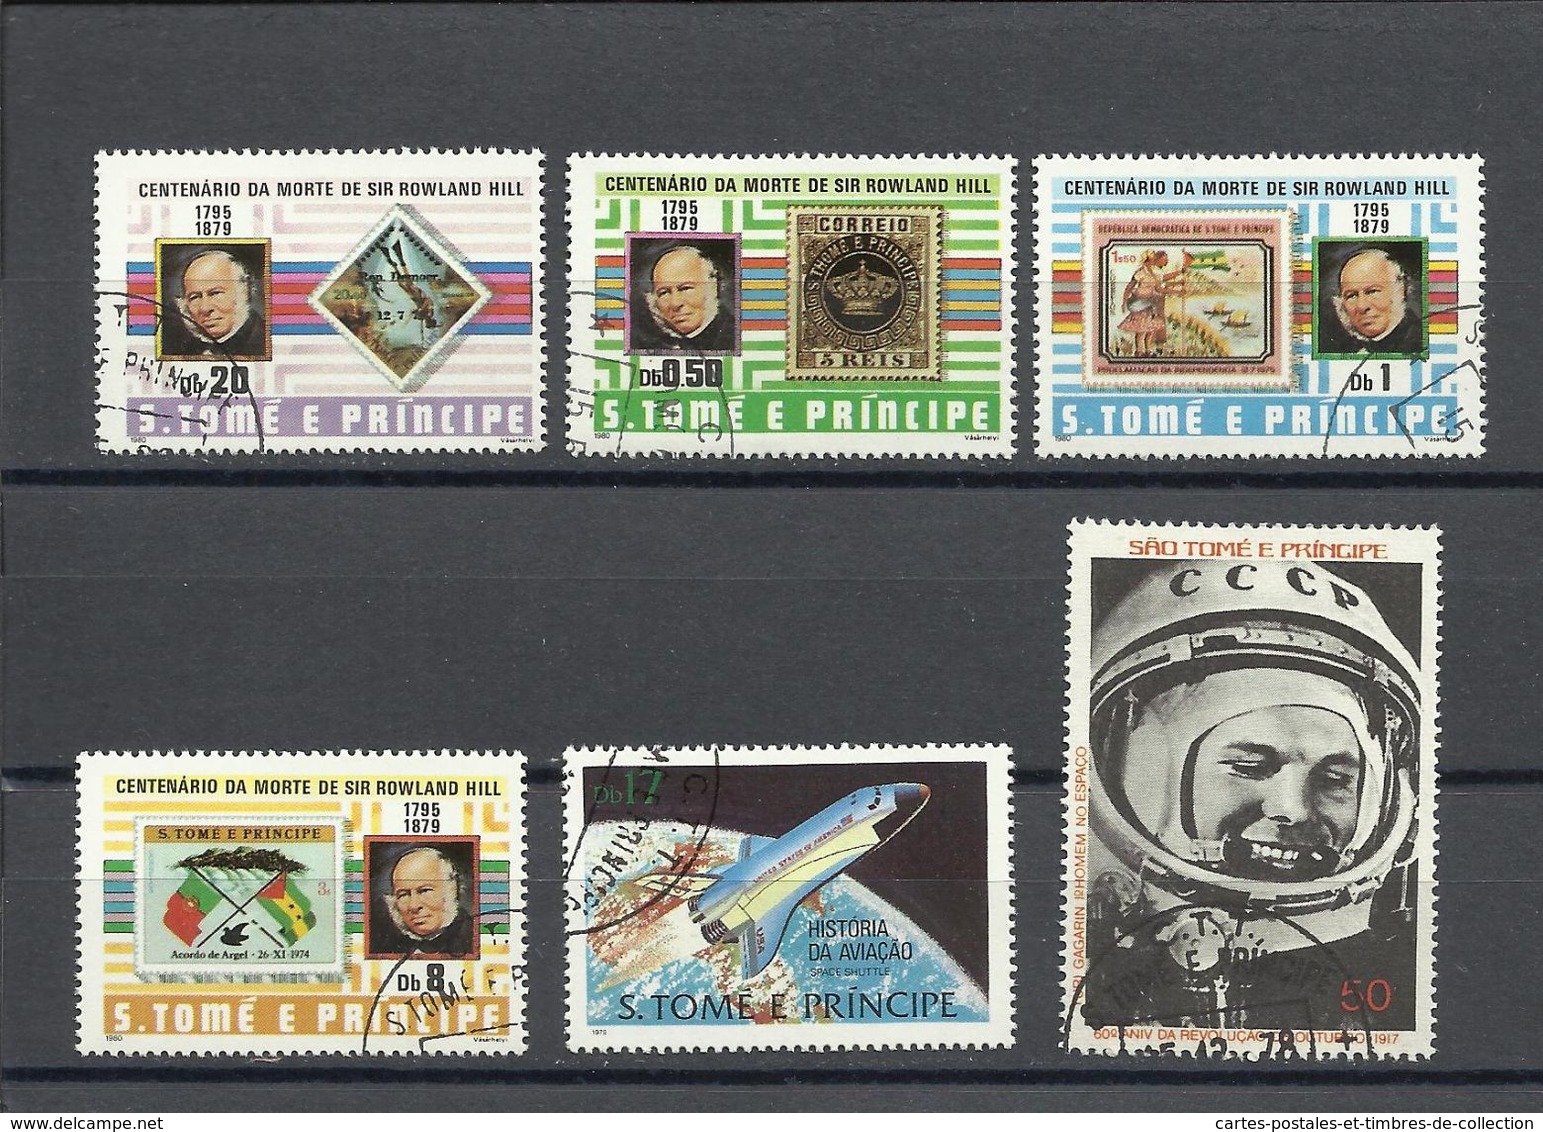 SAINT THOMAS & PRINCE , Lot de 91 timbres de 1953 à ........ voir scans